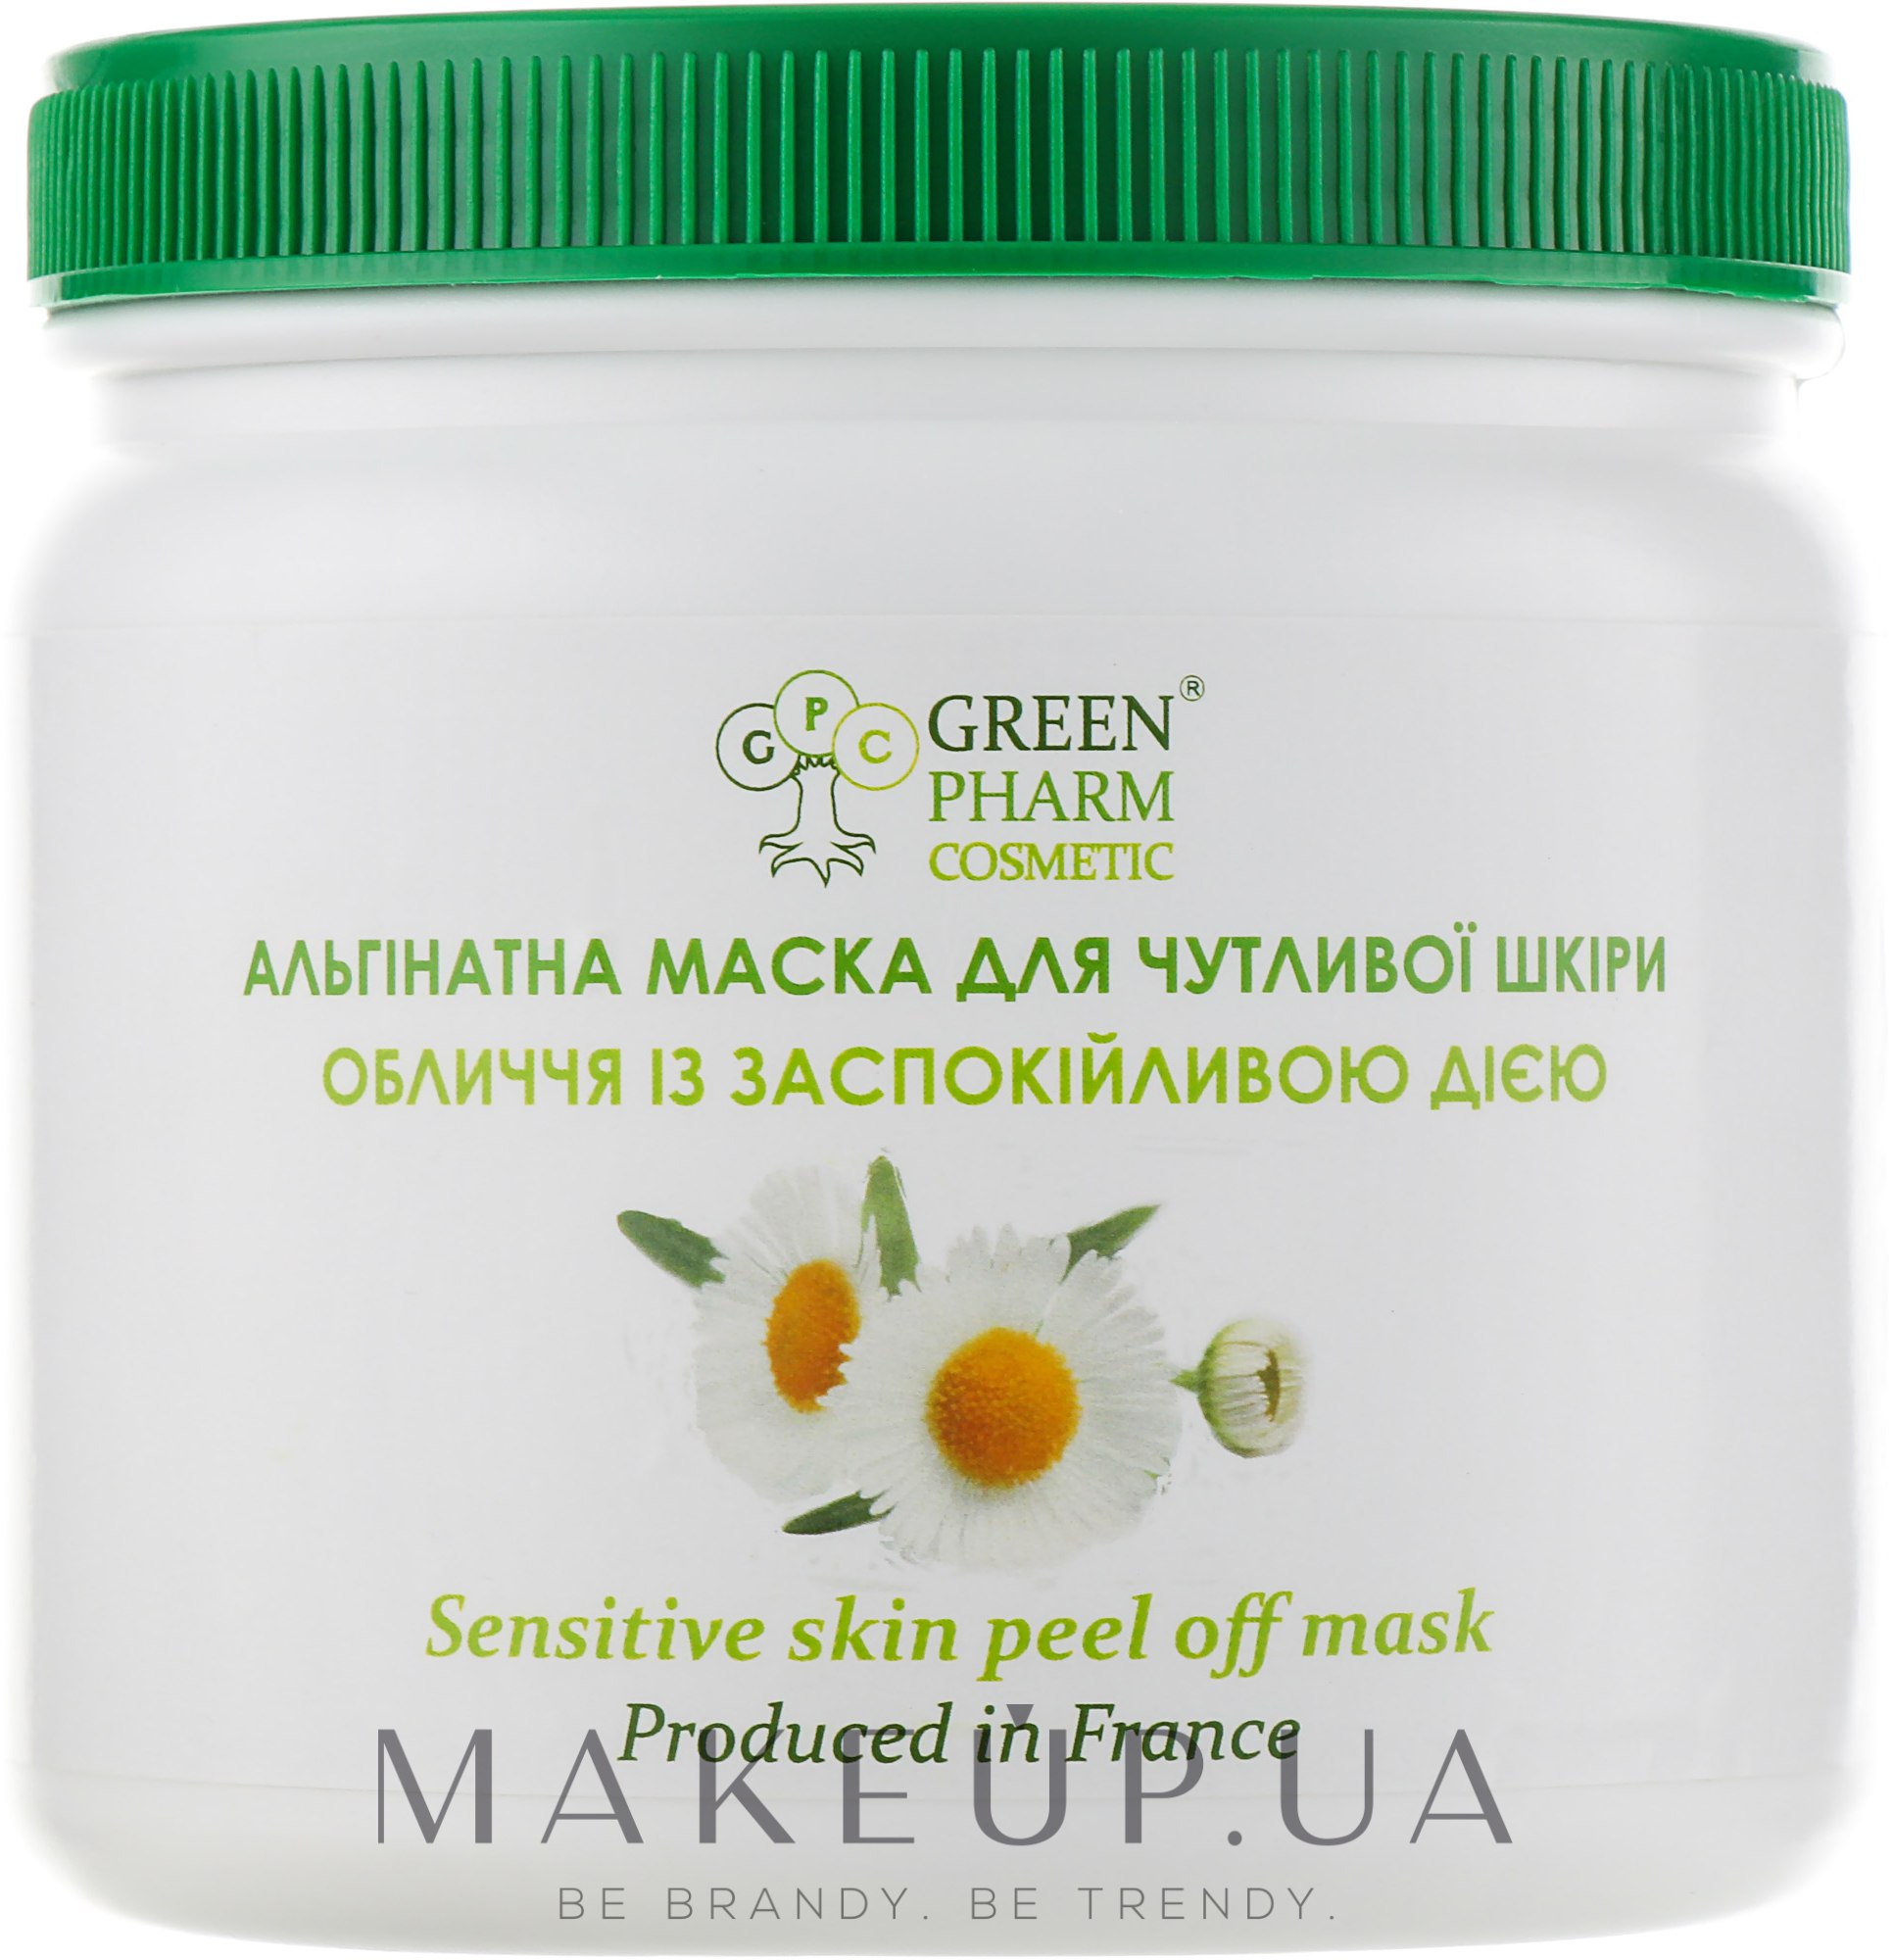 Альгинатная маска для чувствительной кожи лица с успокаивающим действием - Green Pharm Cosmetic Face Mask — фото 250ml